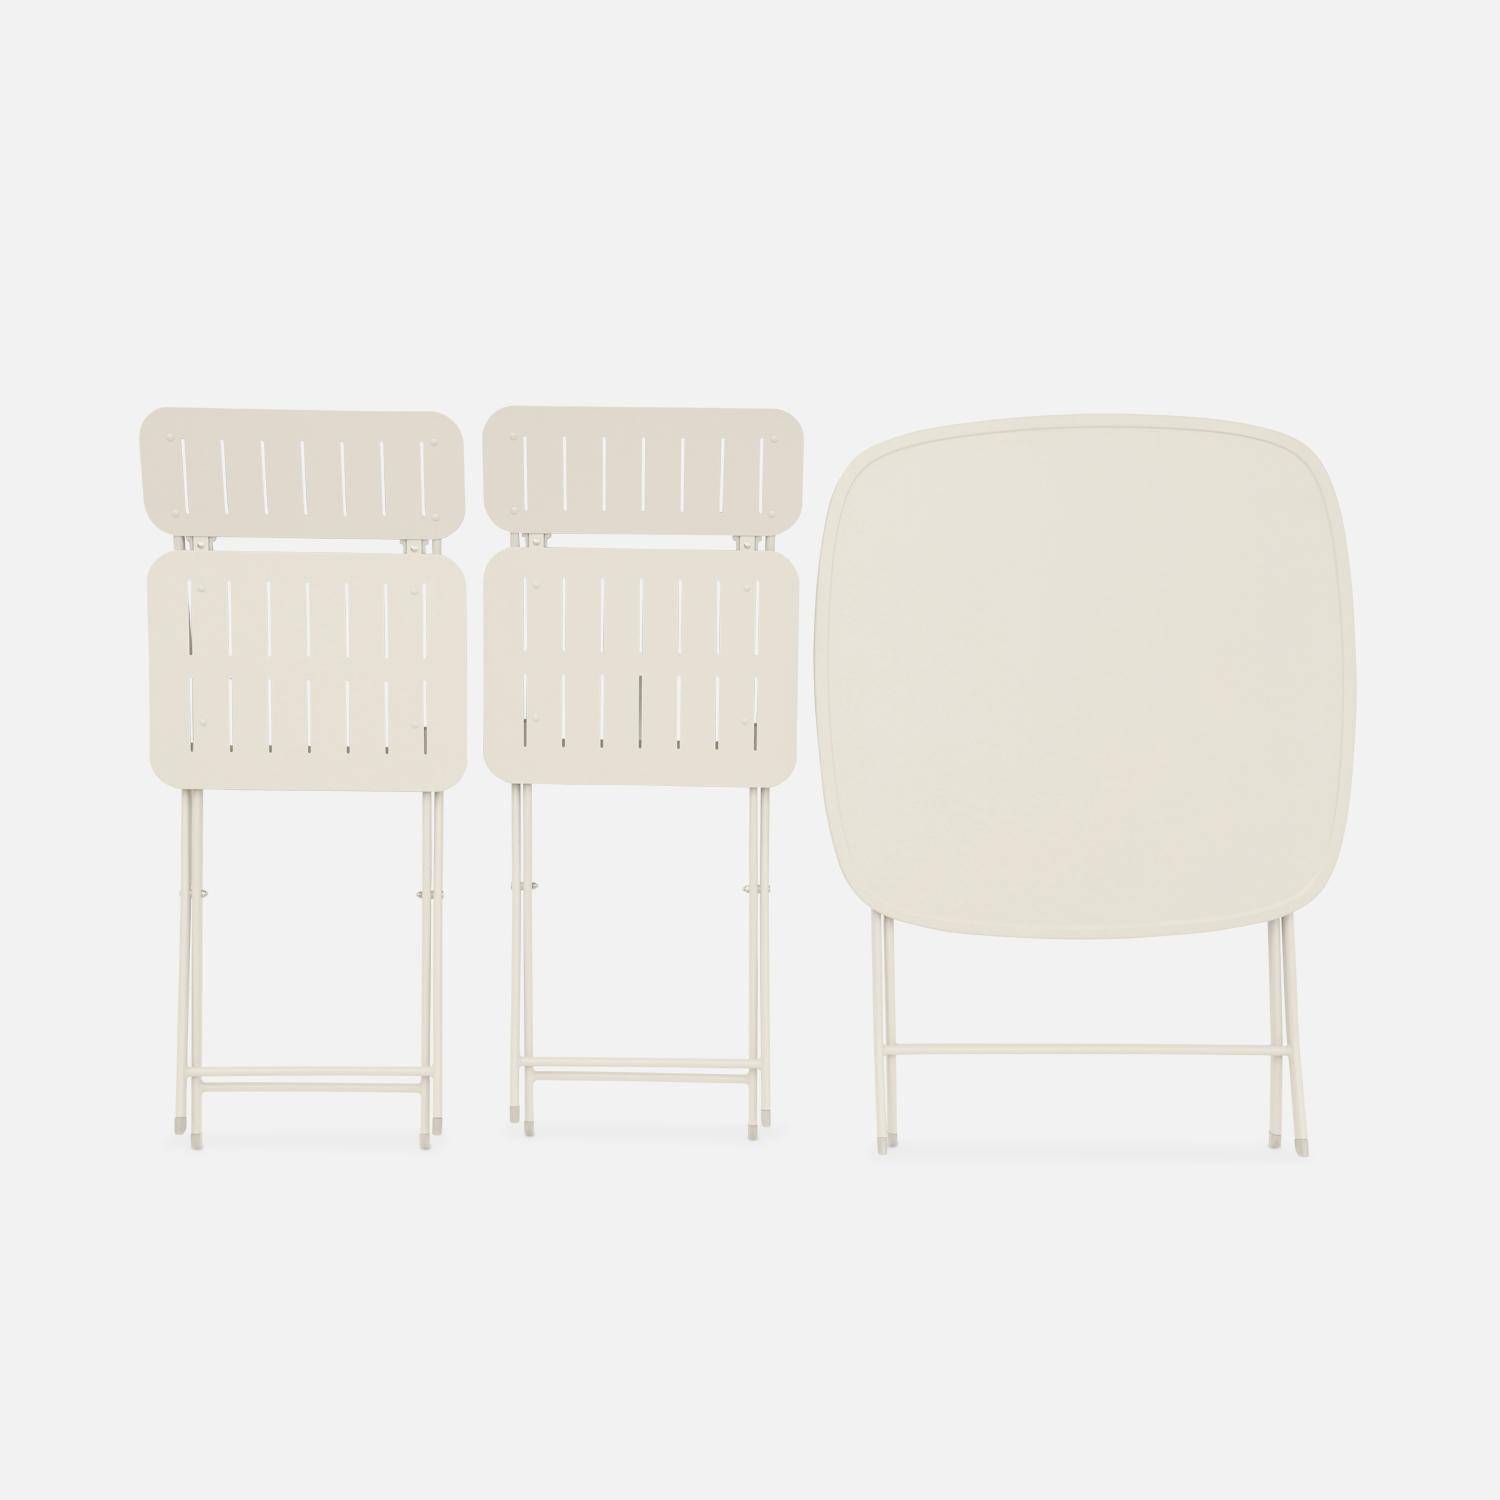 Table de jardin type bistrot pliable blanc cassé avec 2 chaises également pliables en acier galvanisé robuste,sweeek,Photo4